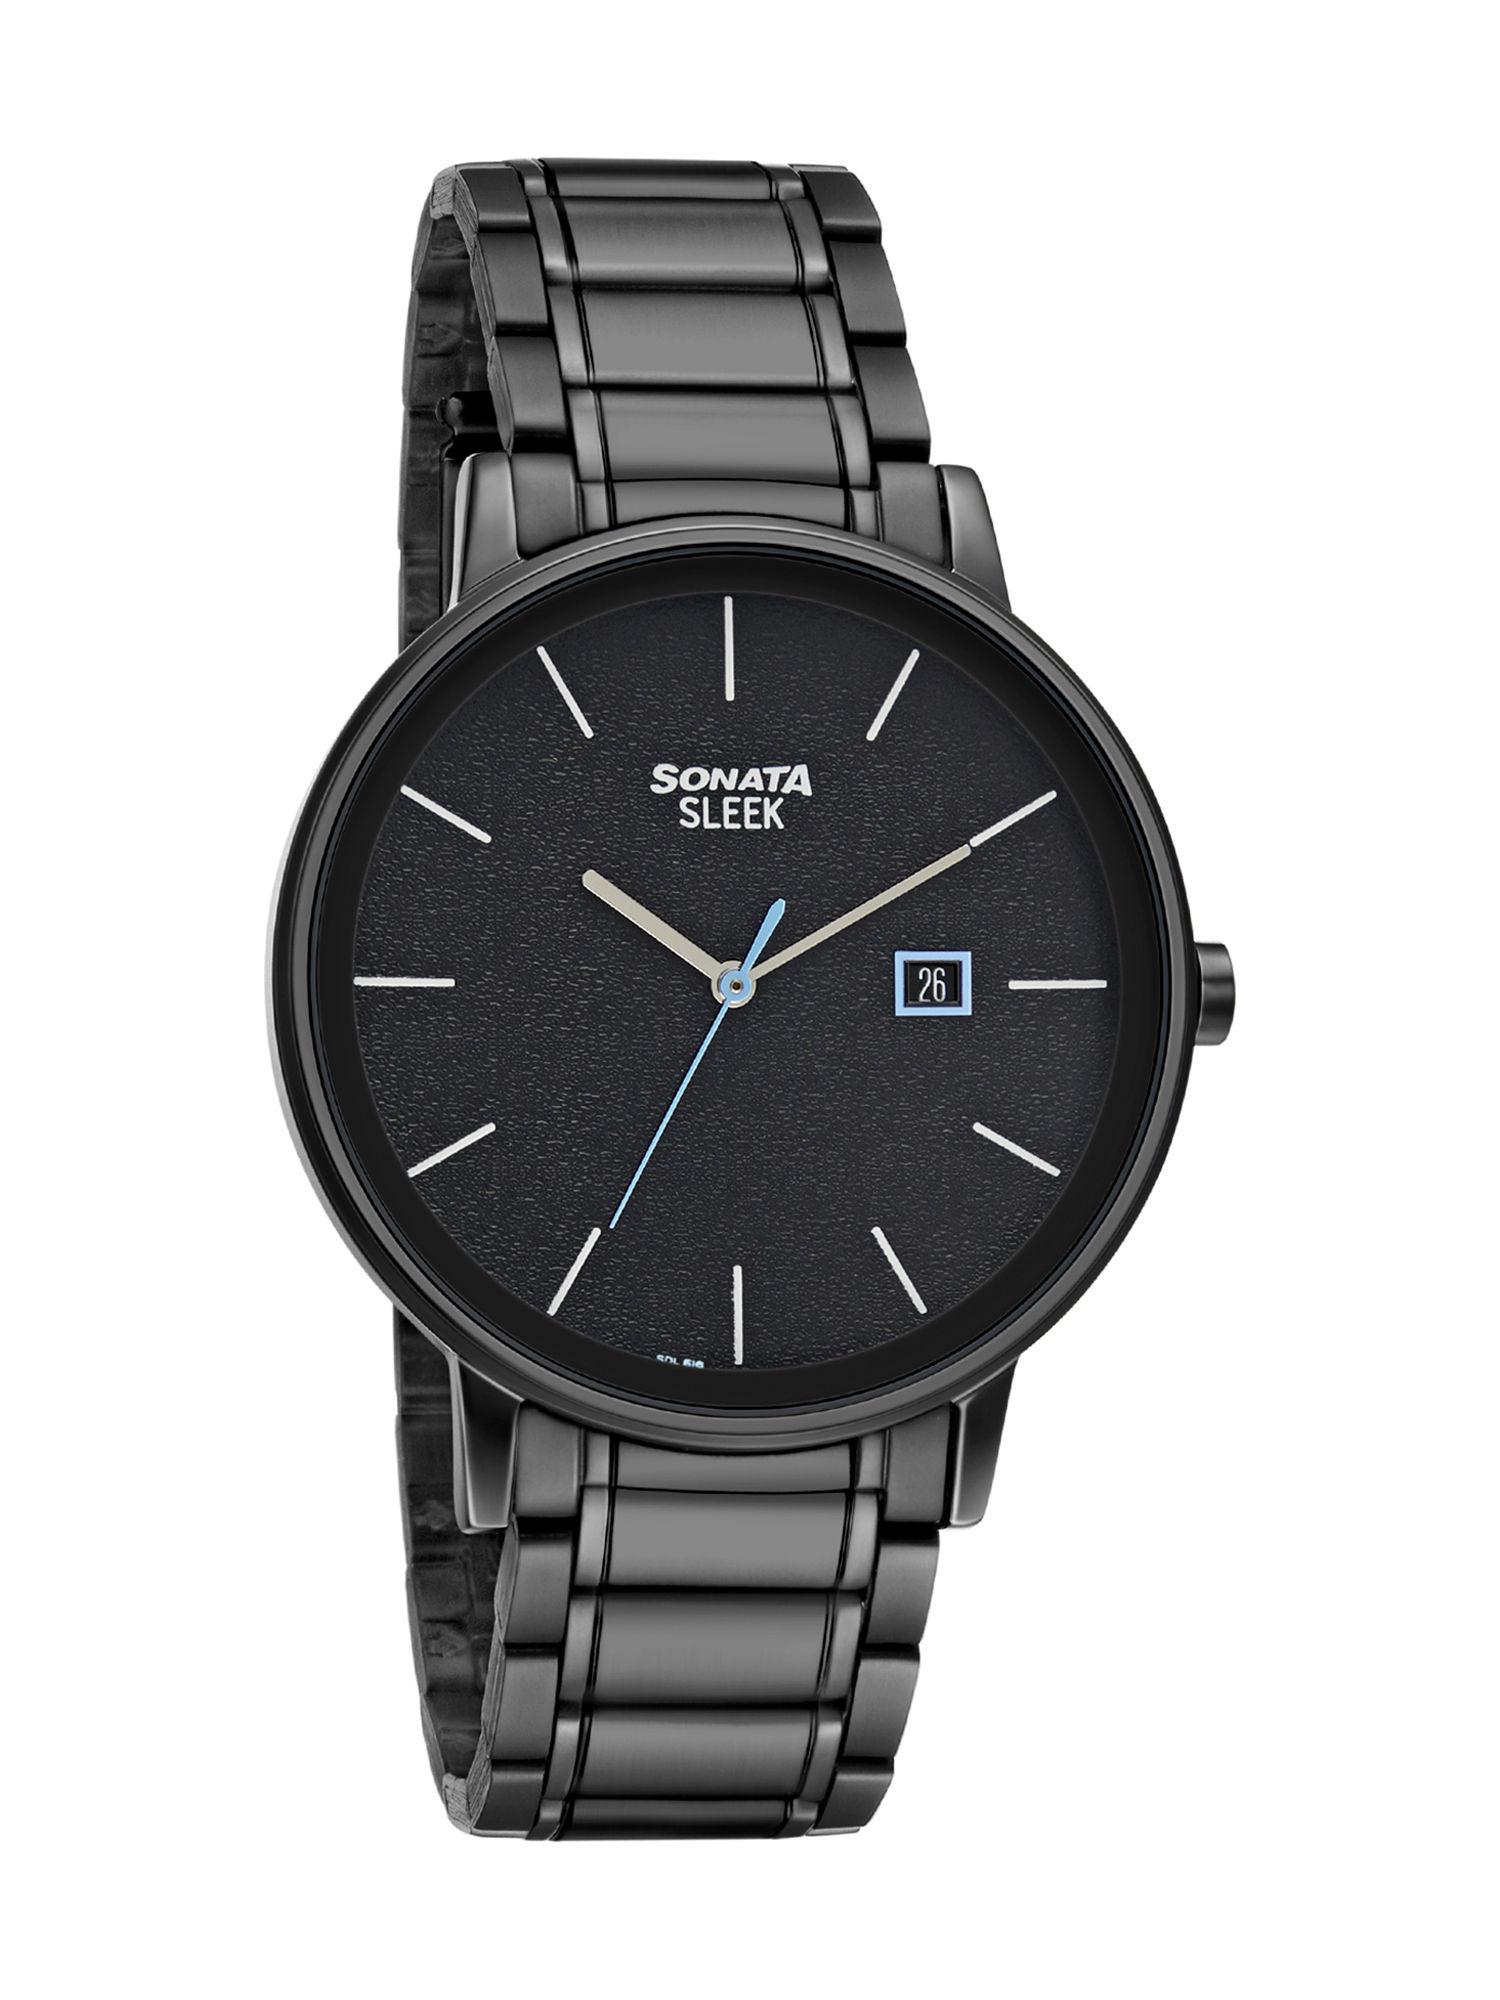 sleek 7131nm02 black dial analog watch for men